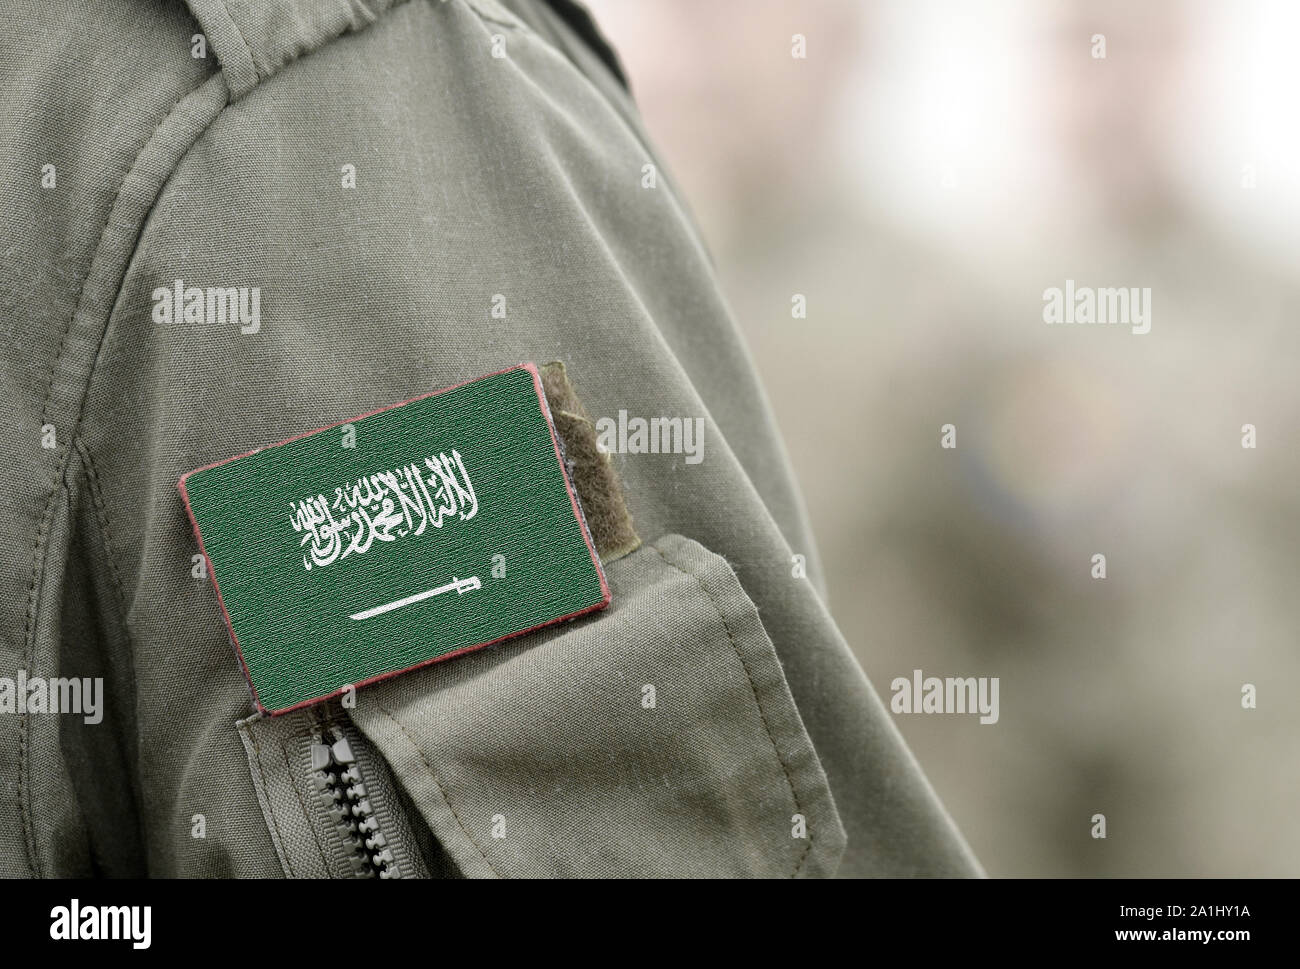 Pavillon de l'Arabie saoudite sur les uniformes militaires (collage). Banque D'Images